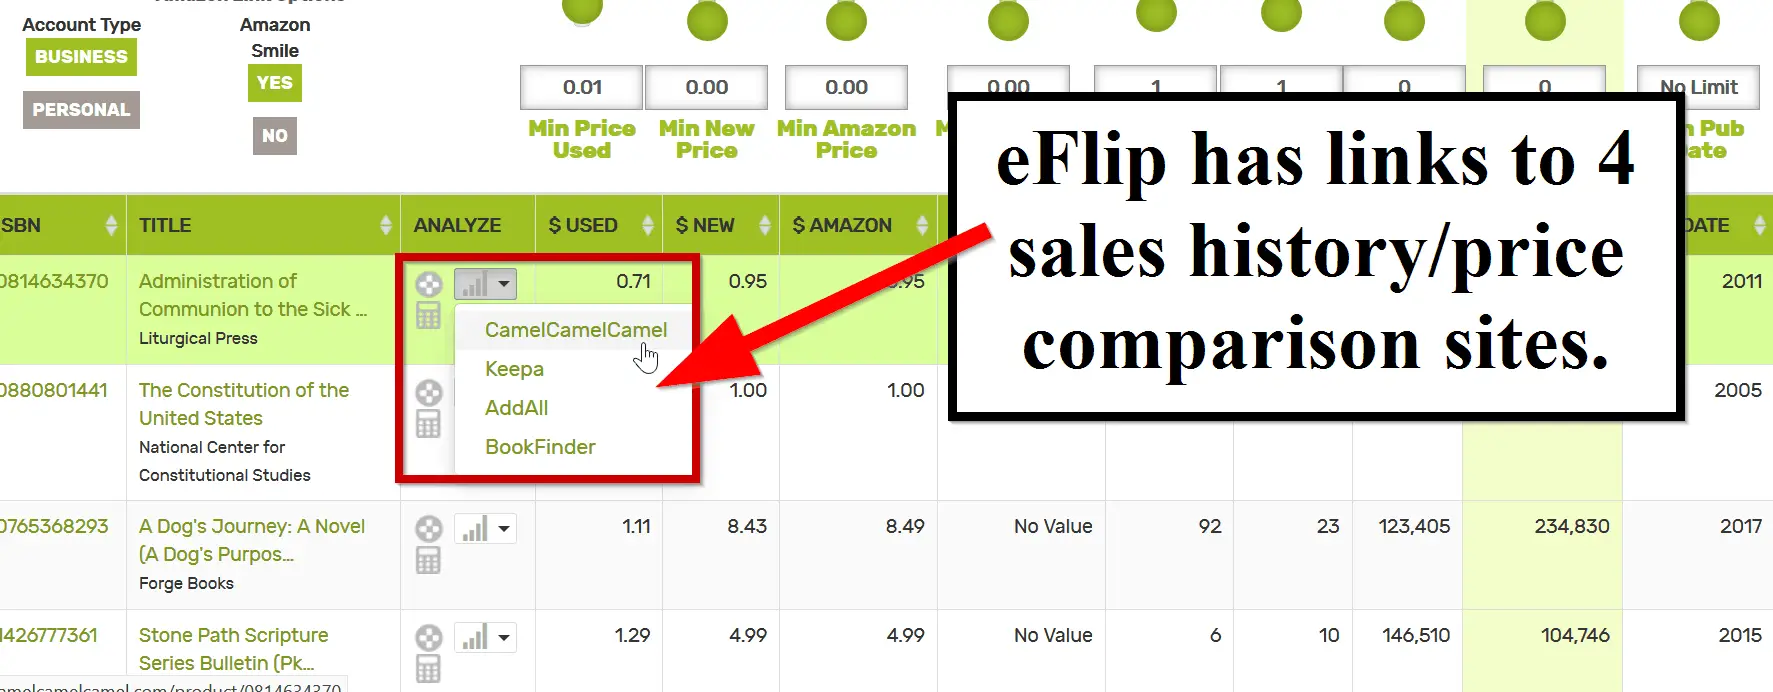 eFlip 4 Comparison Sites